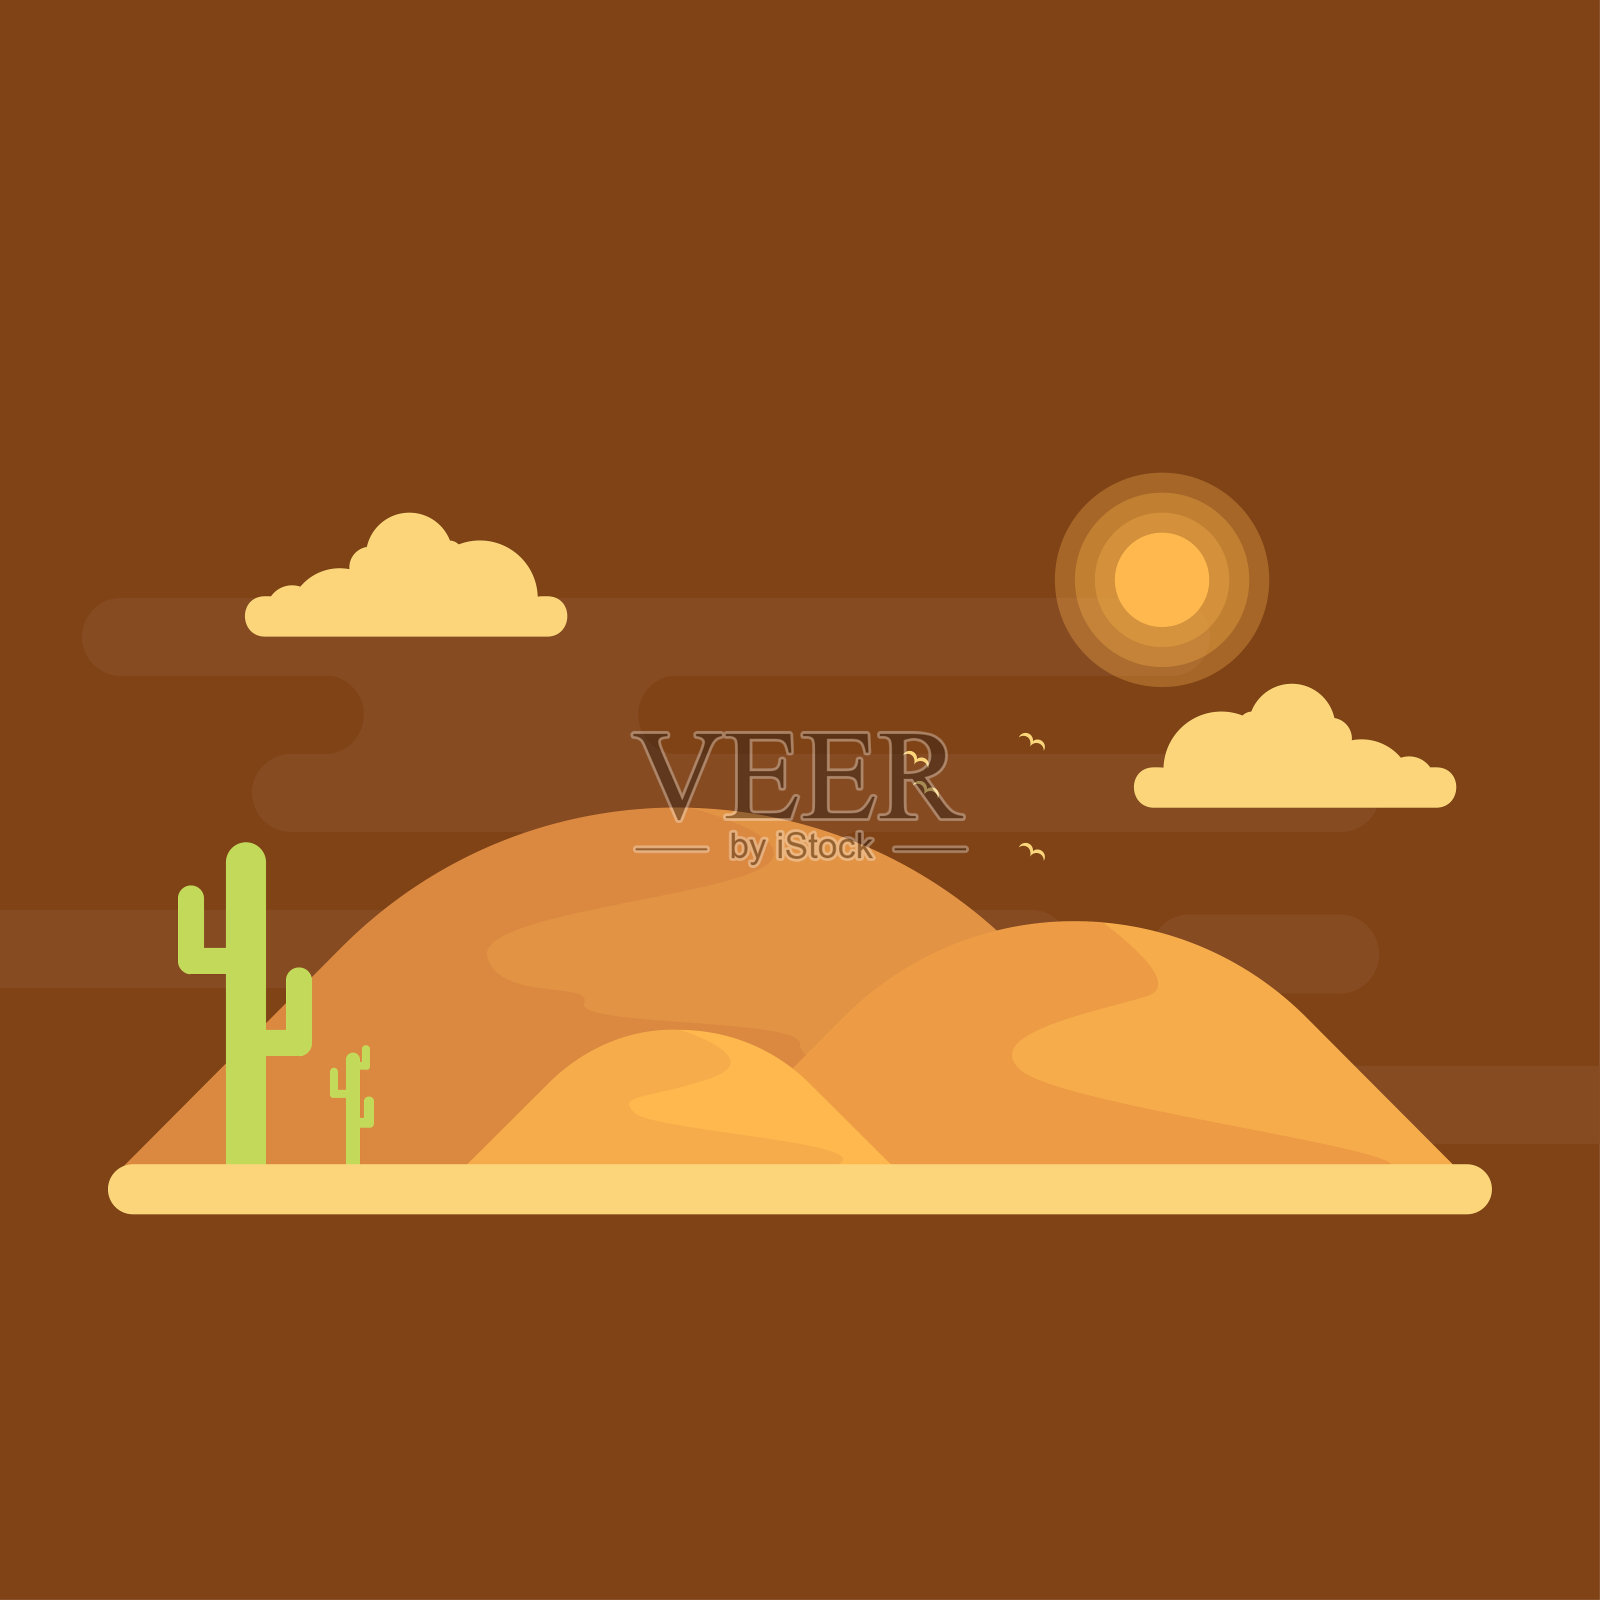 沙漠中生长着绿色的仙人掌。背景是在明亮的阳光下的地平线上的沙丘插画图片素材